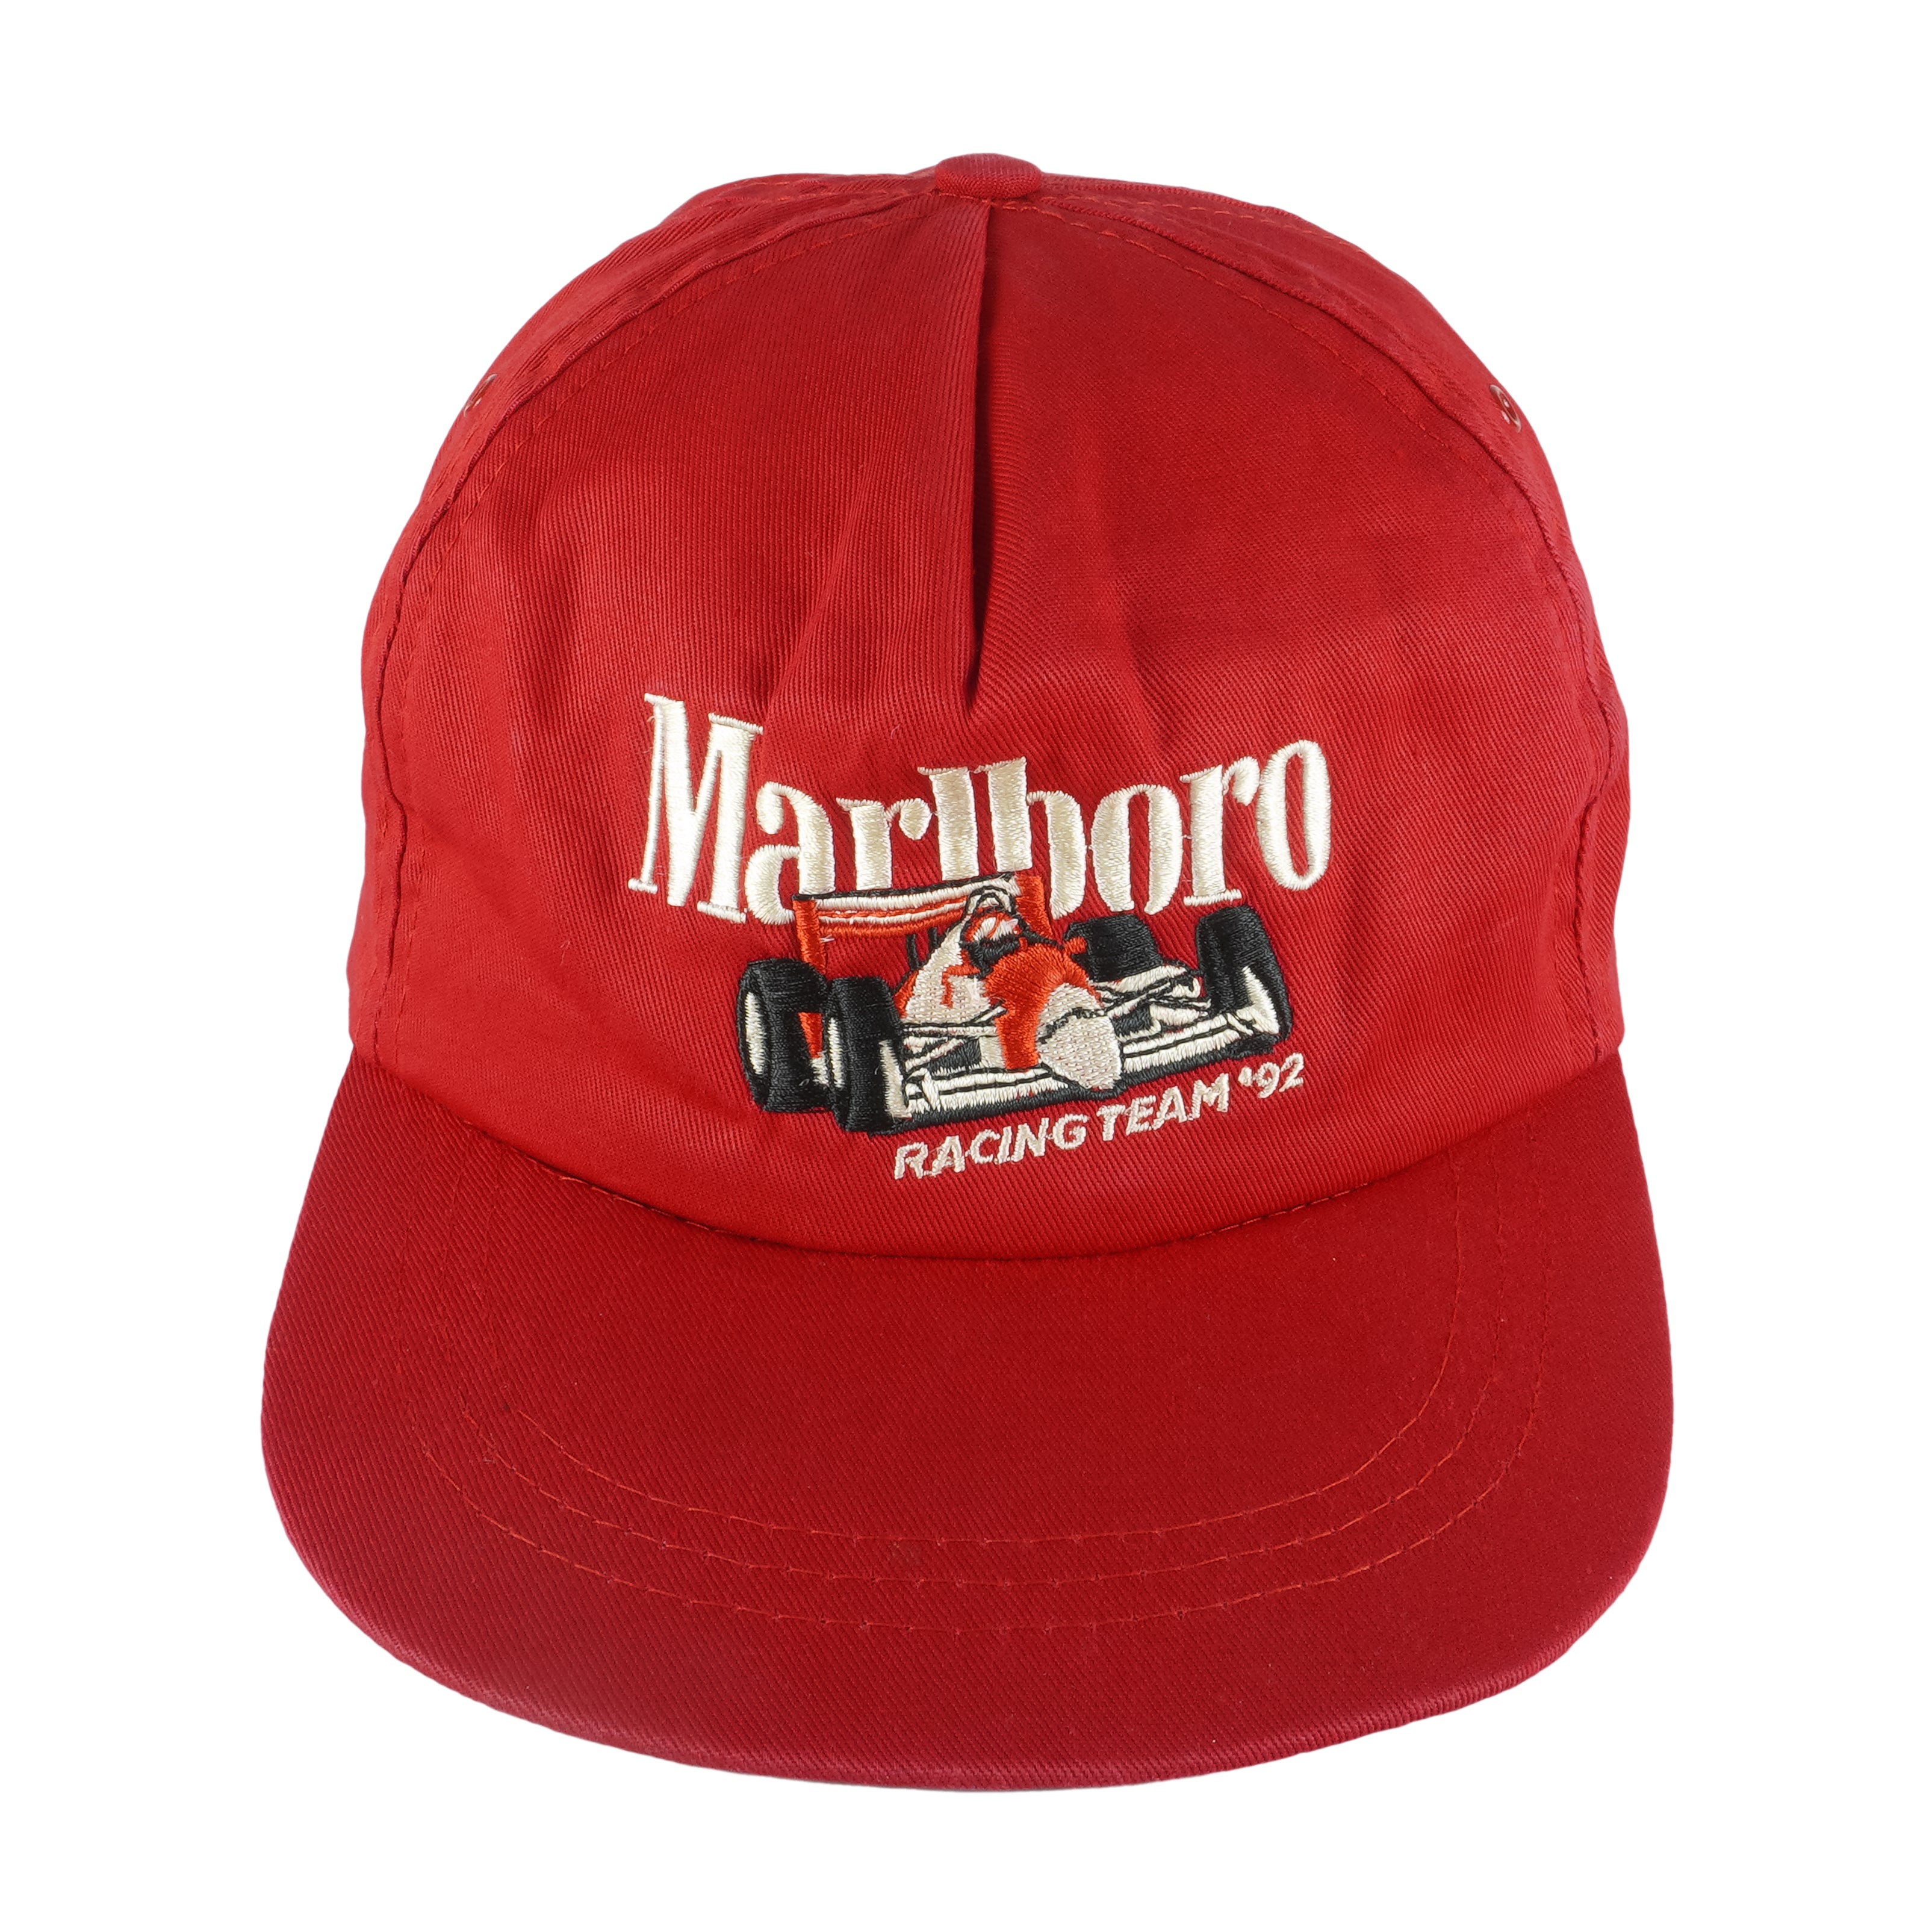 Vintage Marlboro - World Championship Team Embroidered Snapback